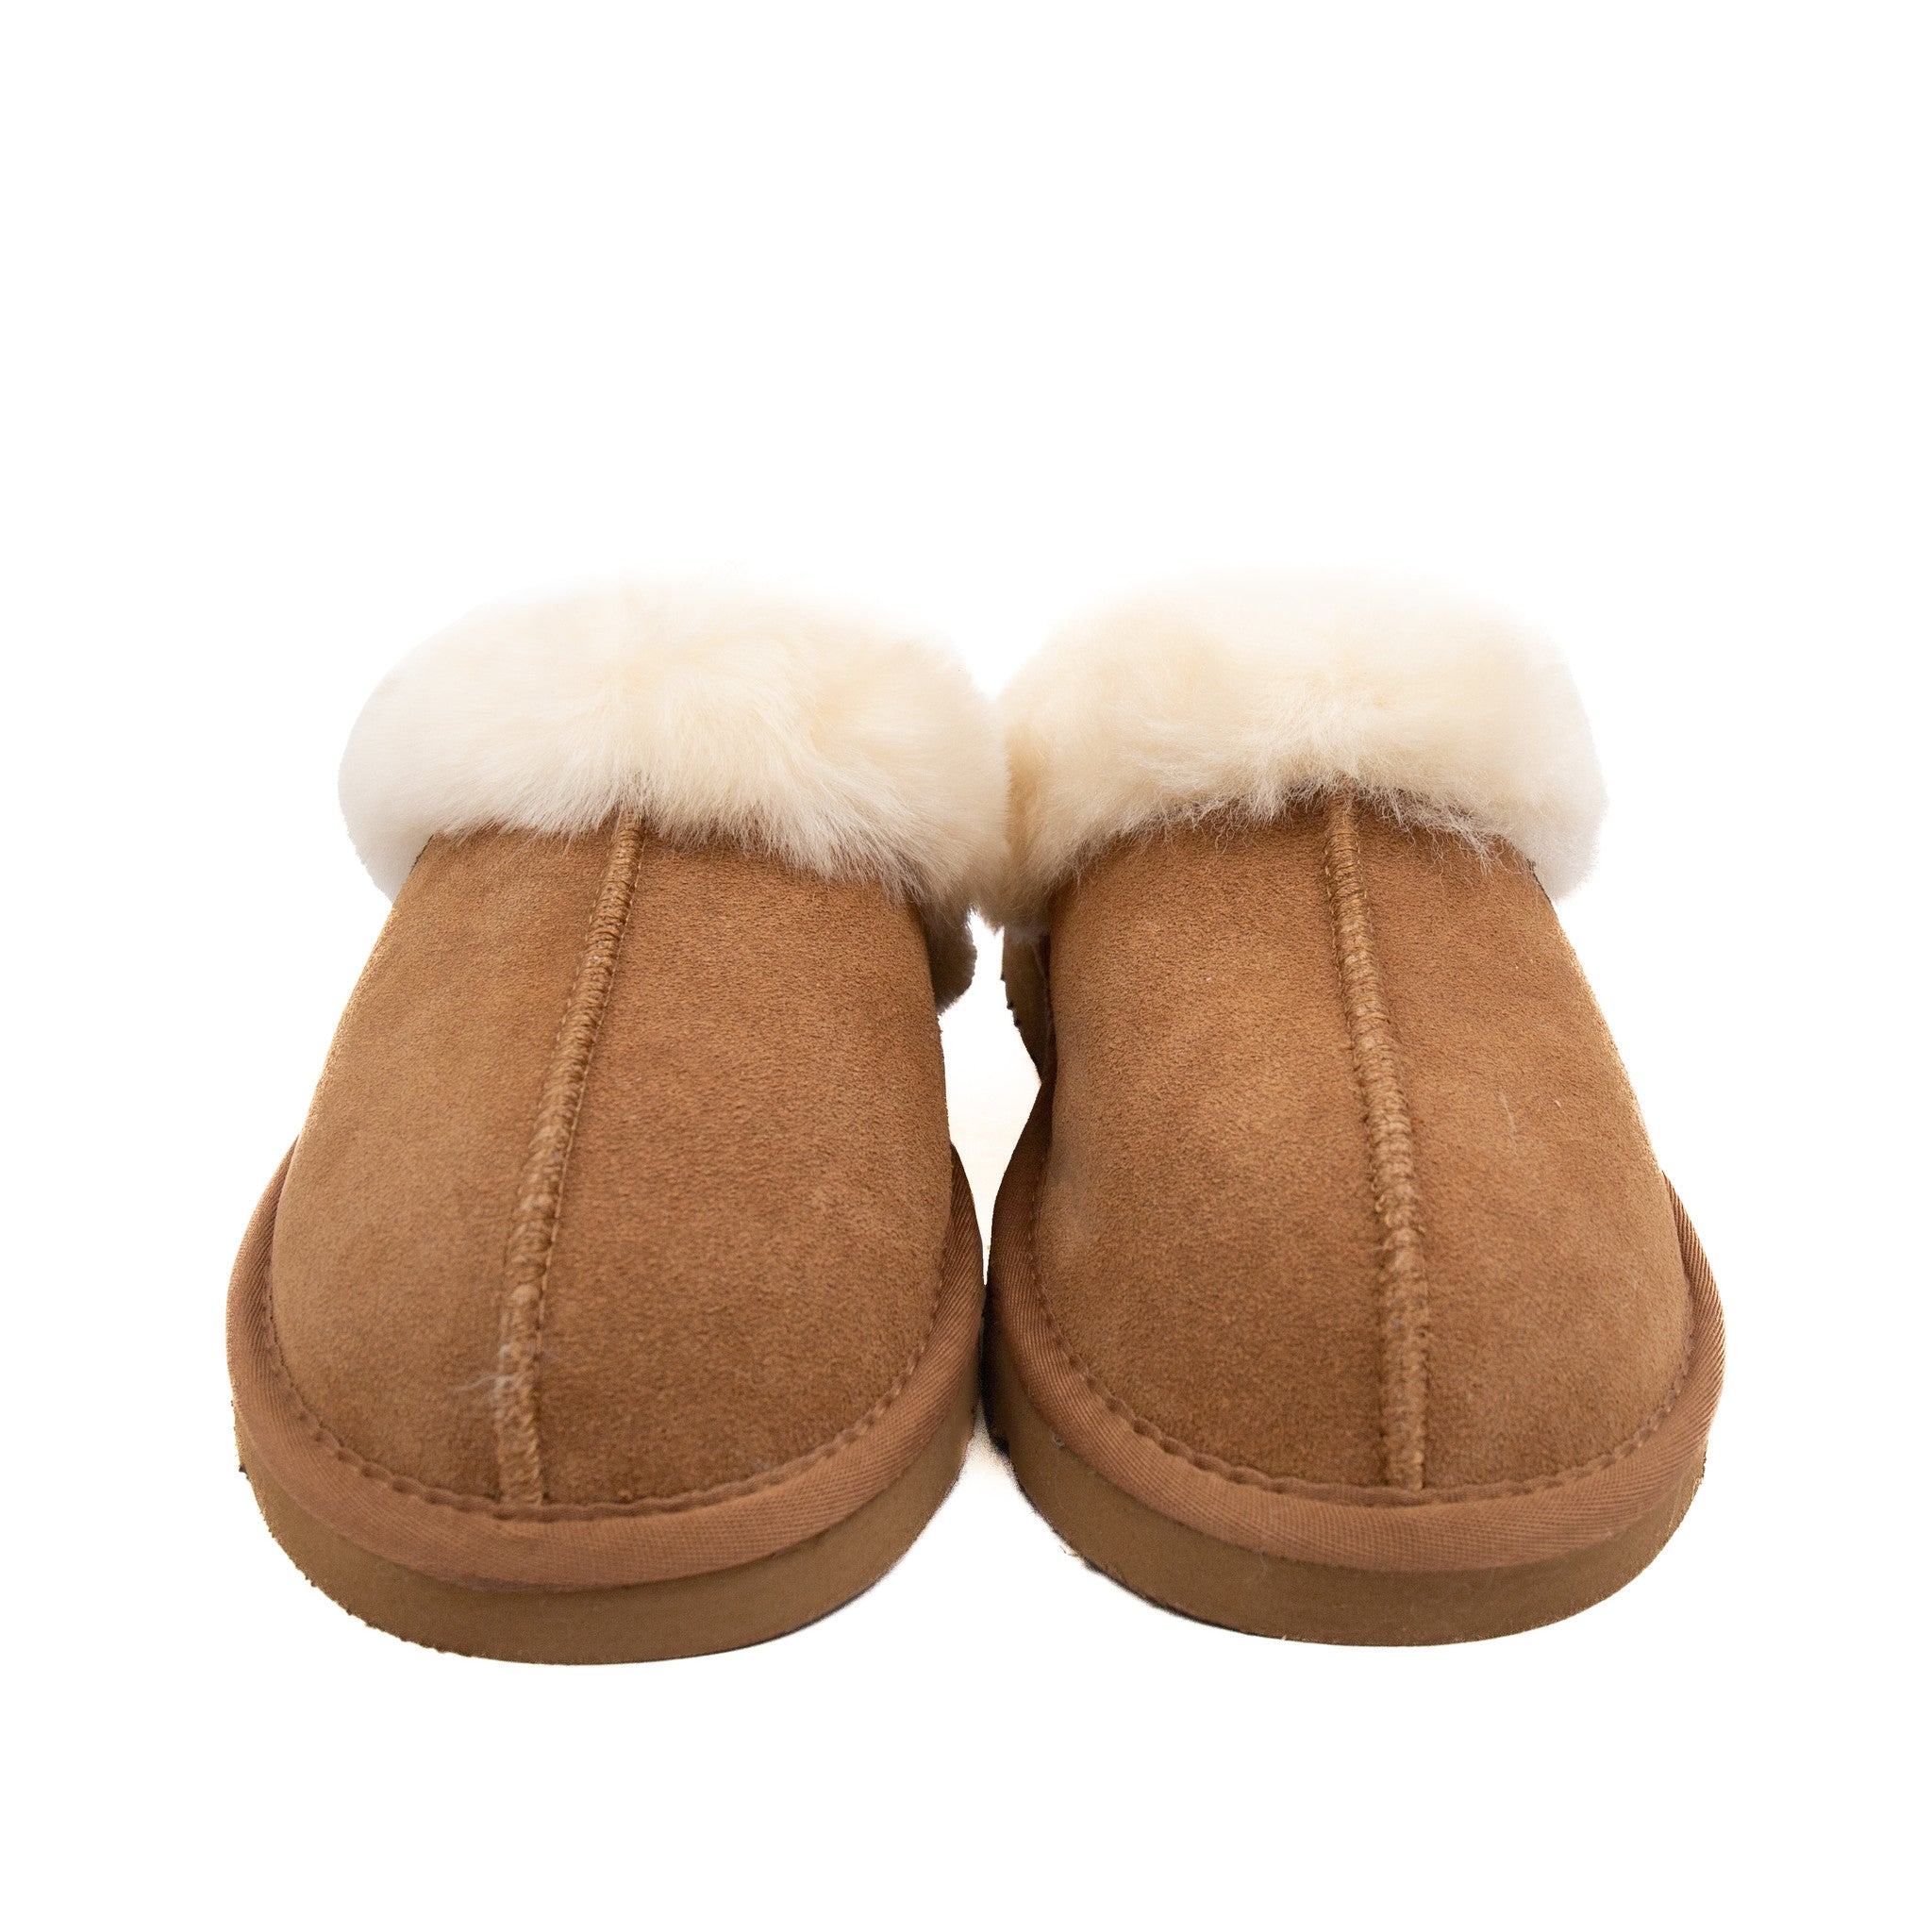 Shop slippers 'Teddy' in beige?